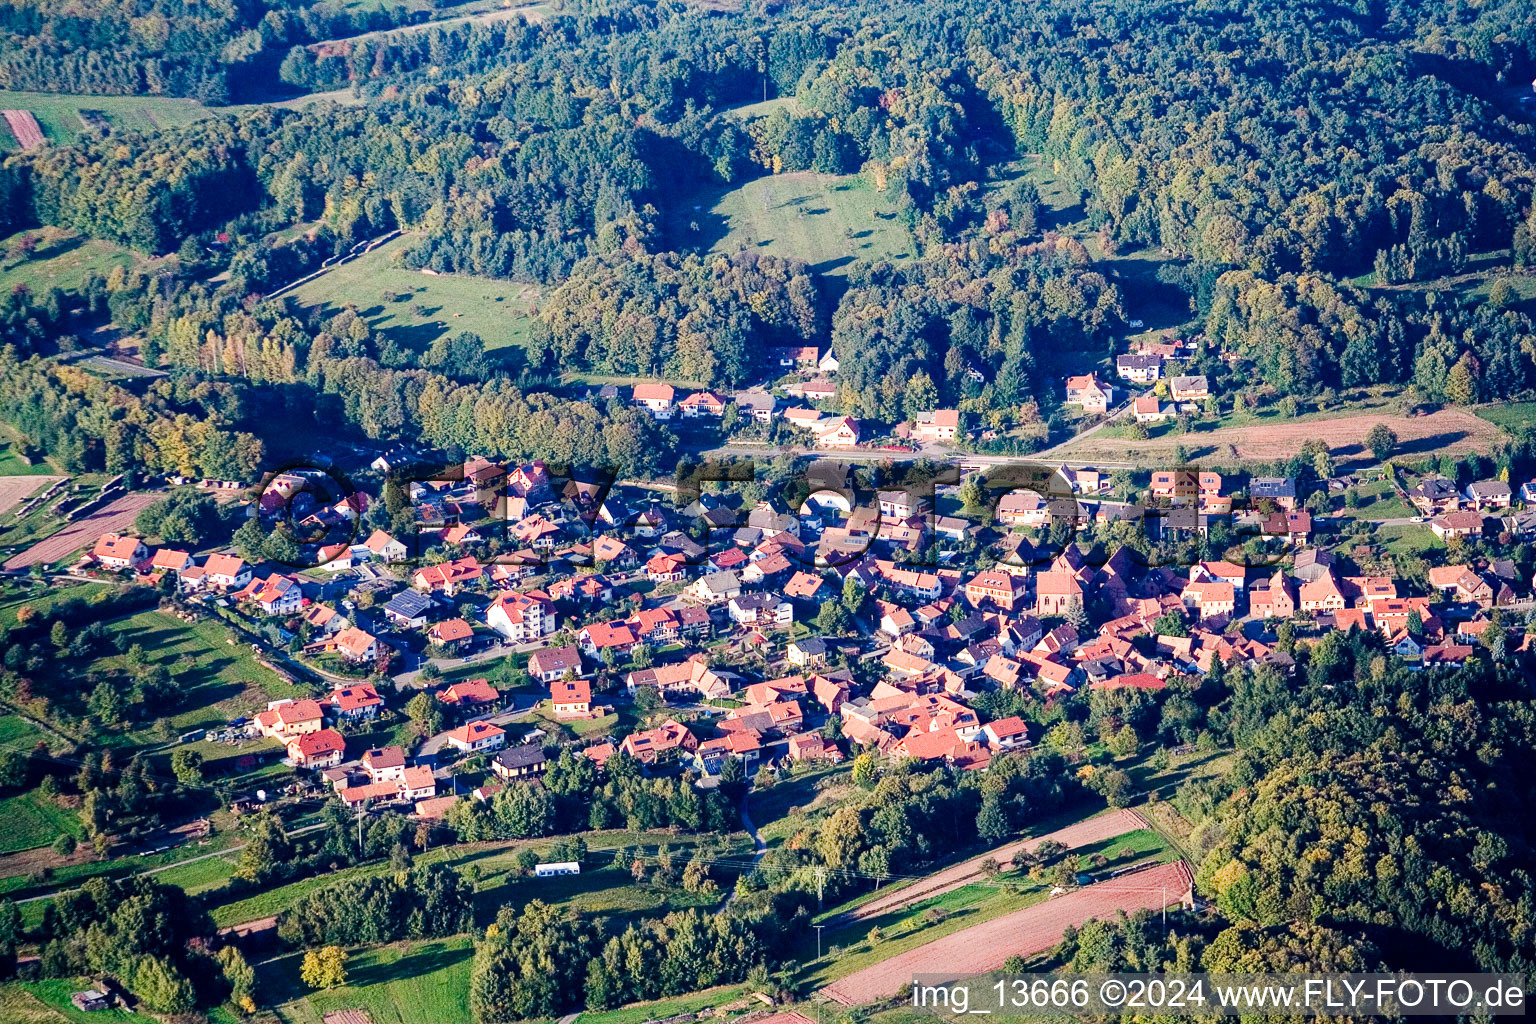 Drohnenbild von Ortsteil Gossersweiler in Gossersweiler-Stein im Bundesland Rheinland-Pfalz, Deutschland